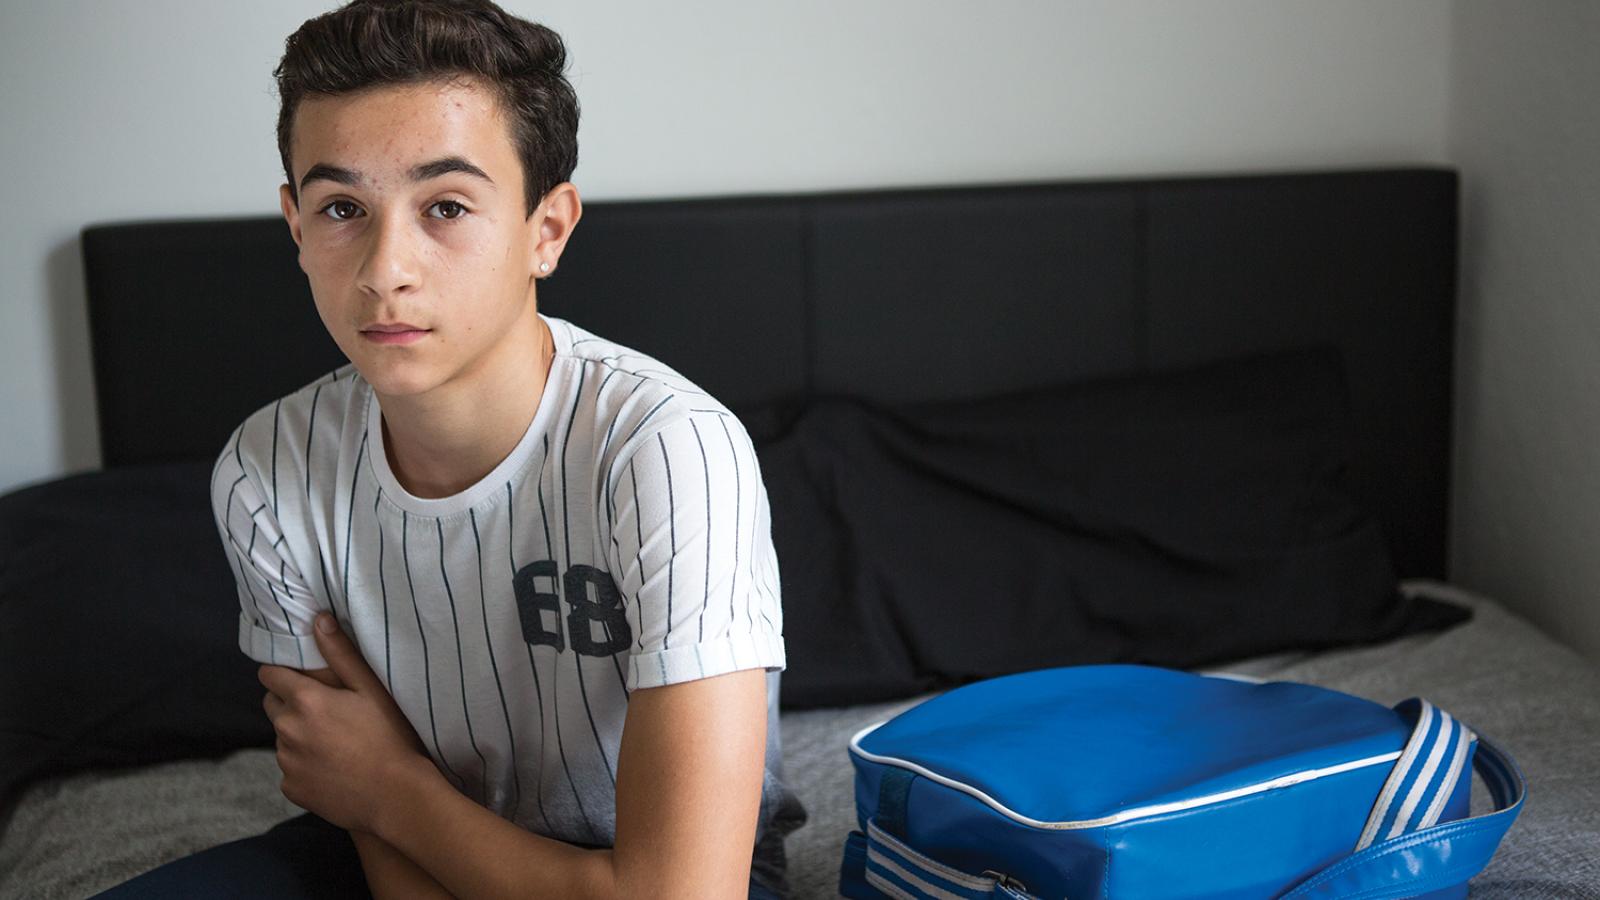 Boy with baseball shirt and blue bag